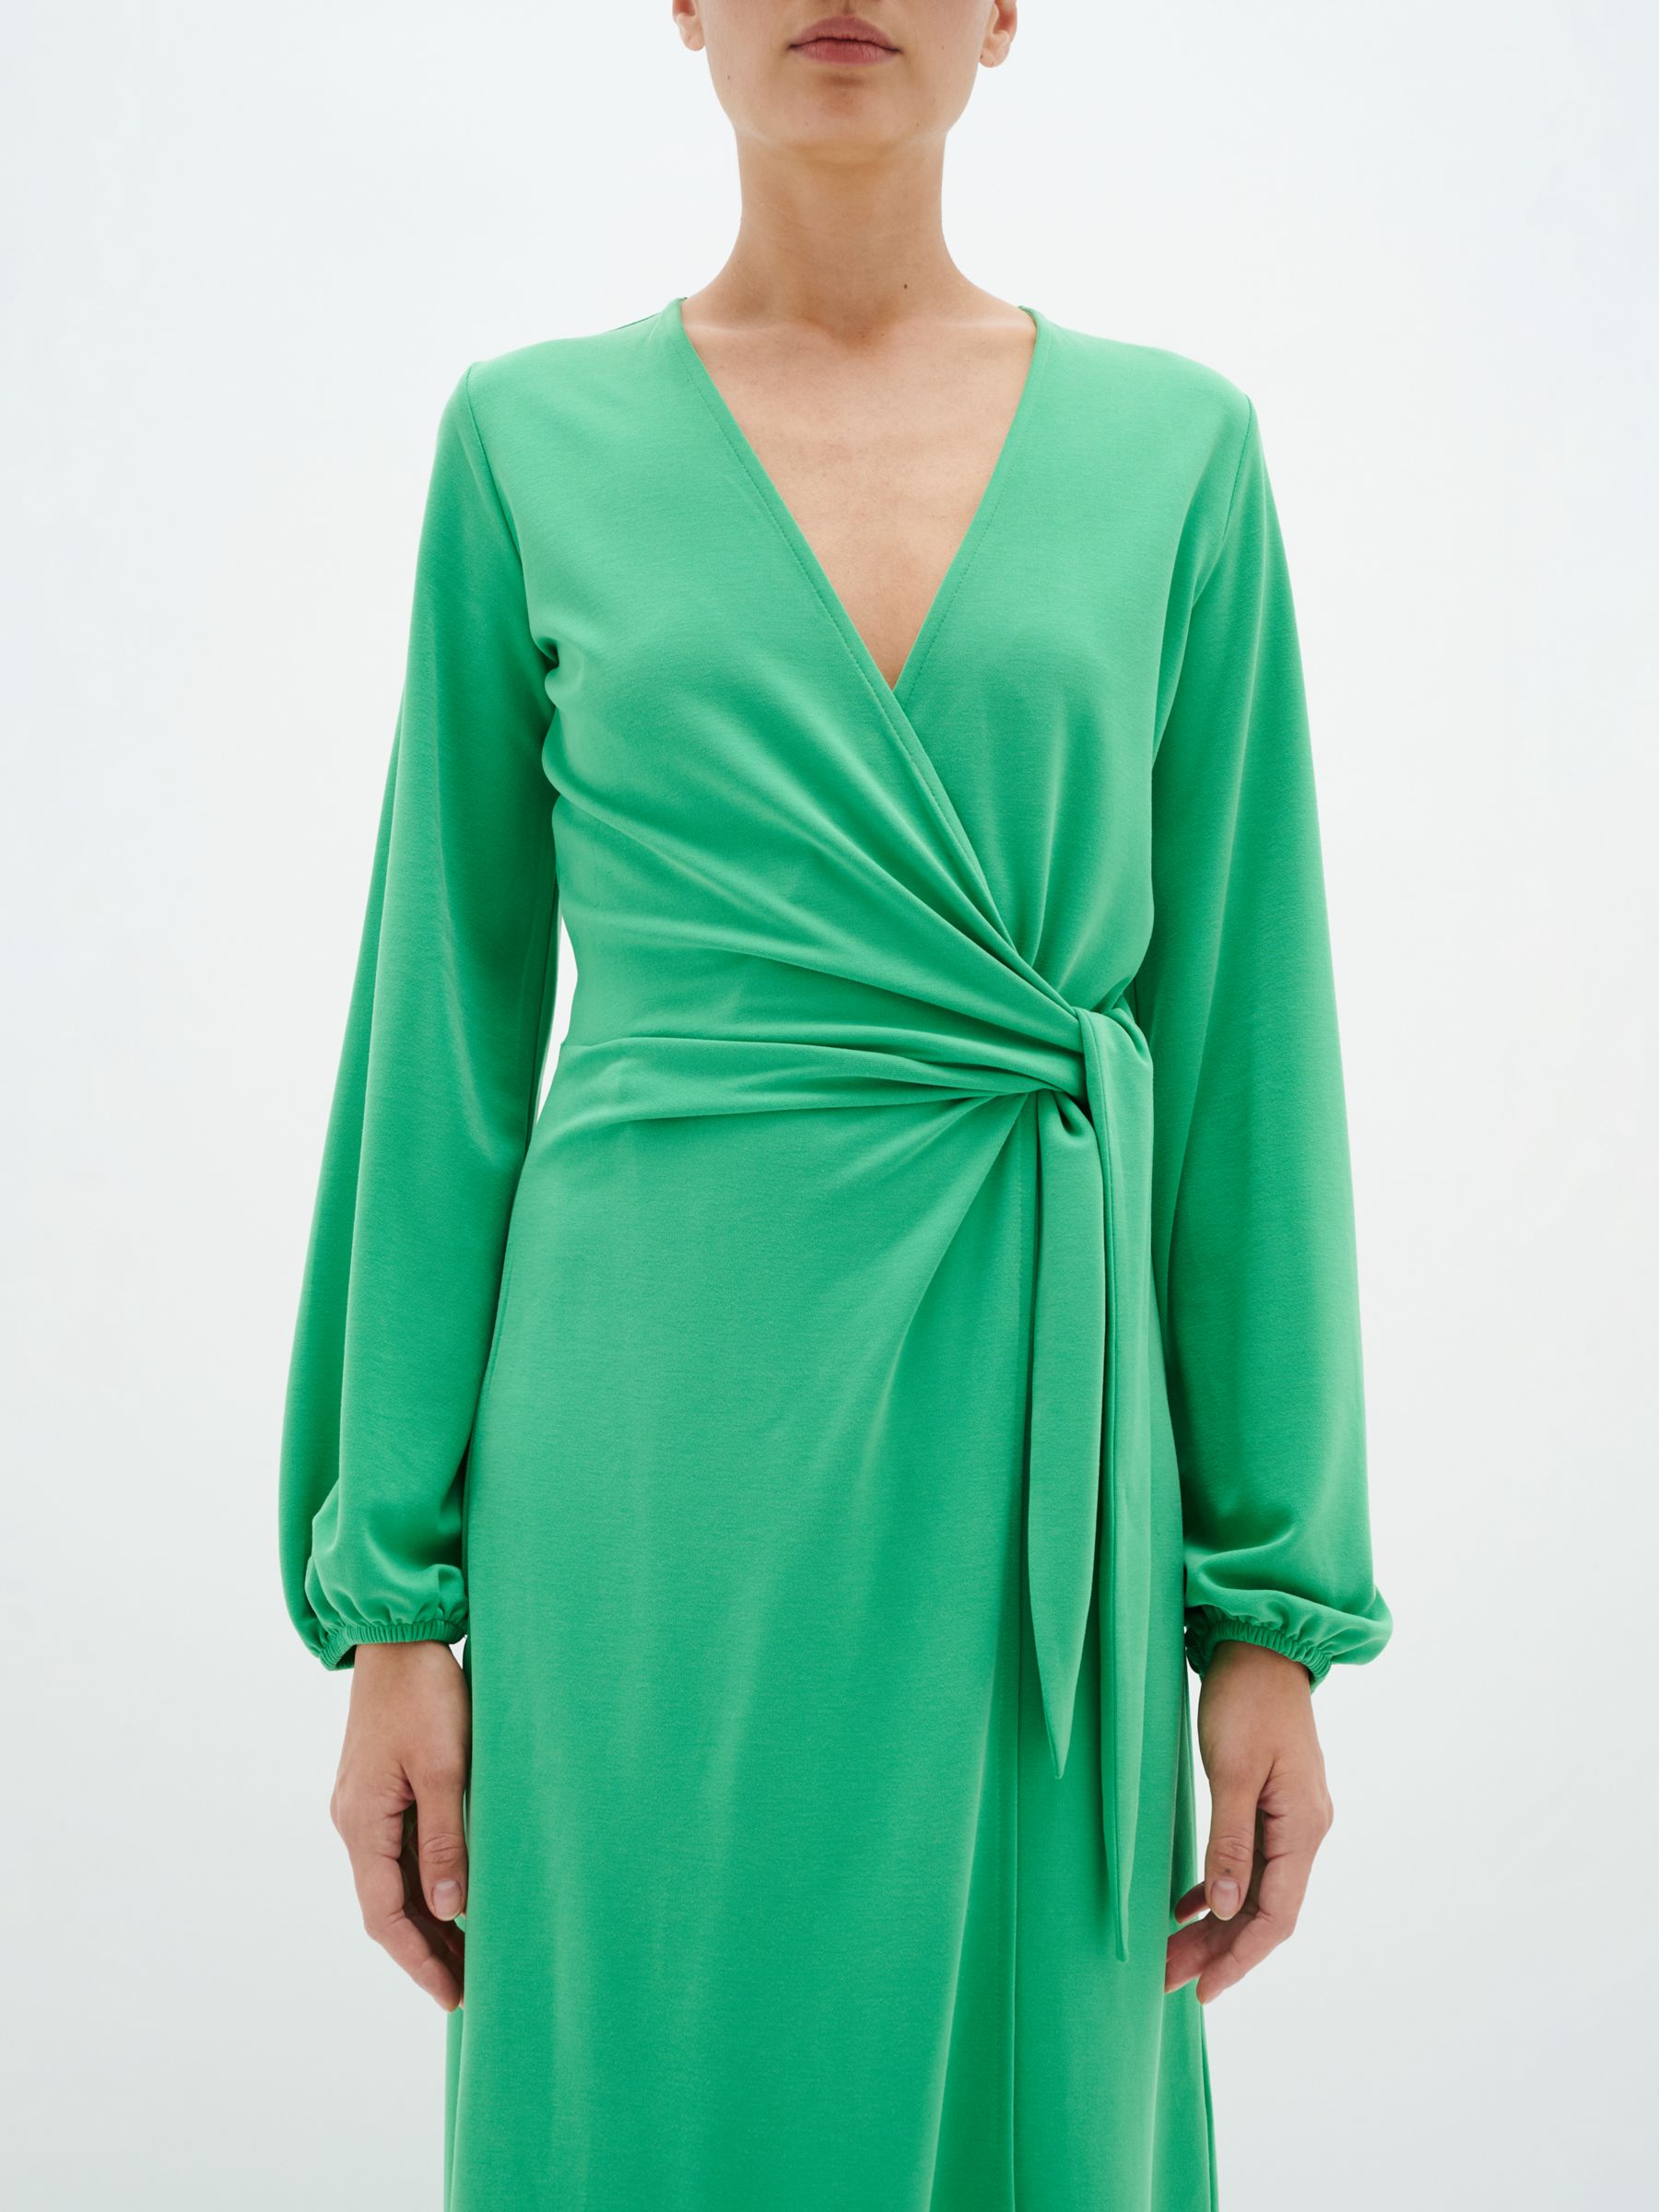 InWear Catja Wrap Midi Dress, Bright Green, XS